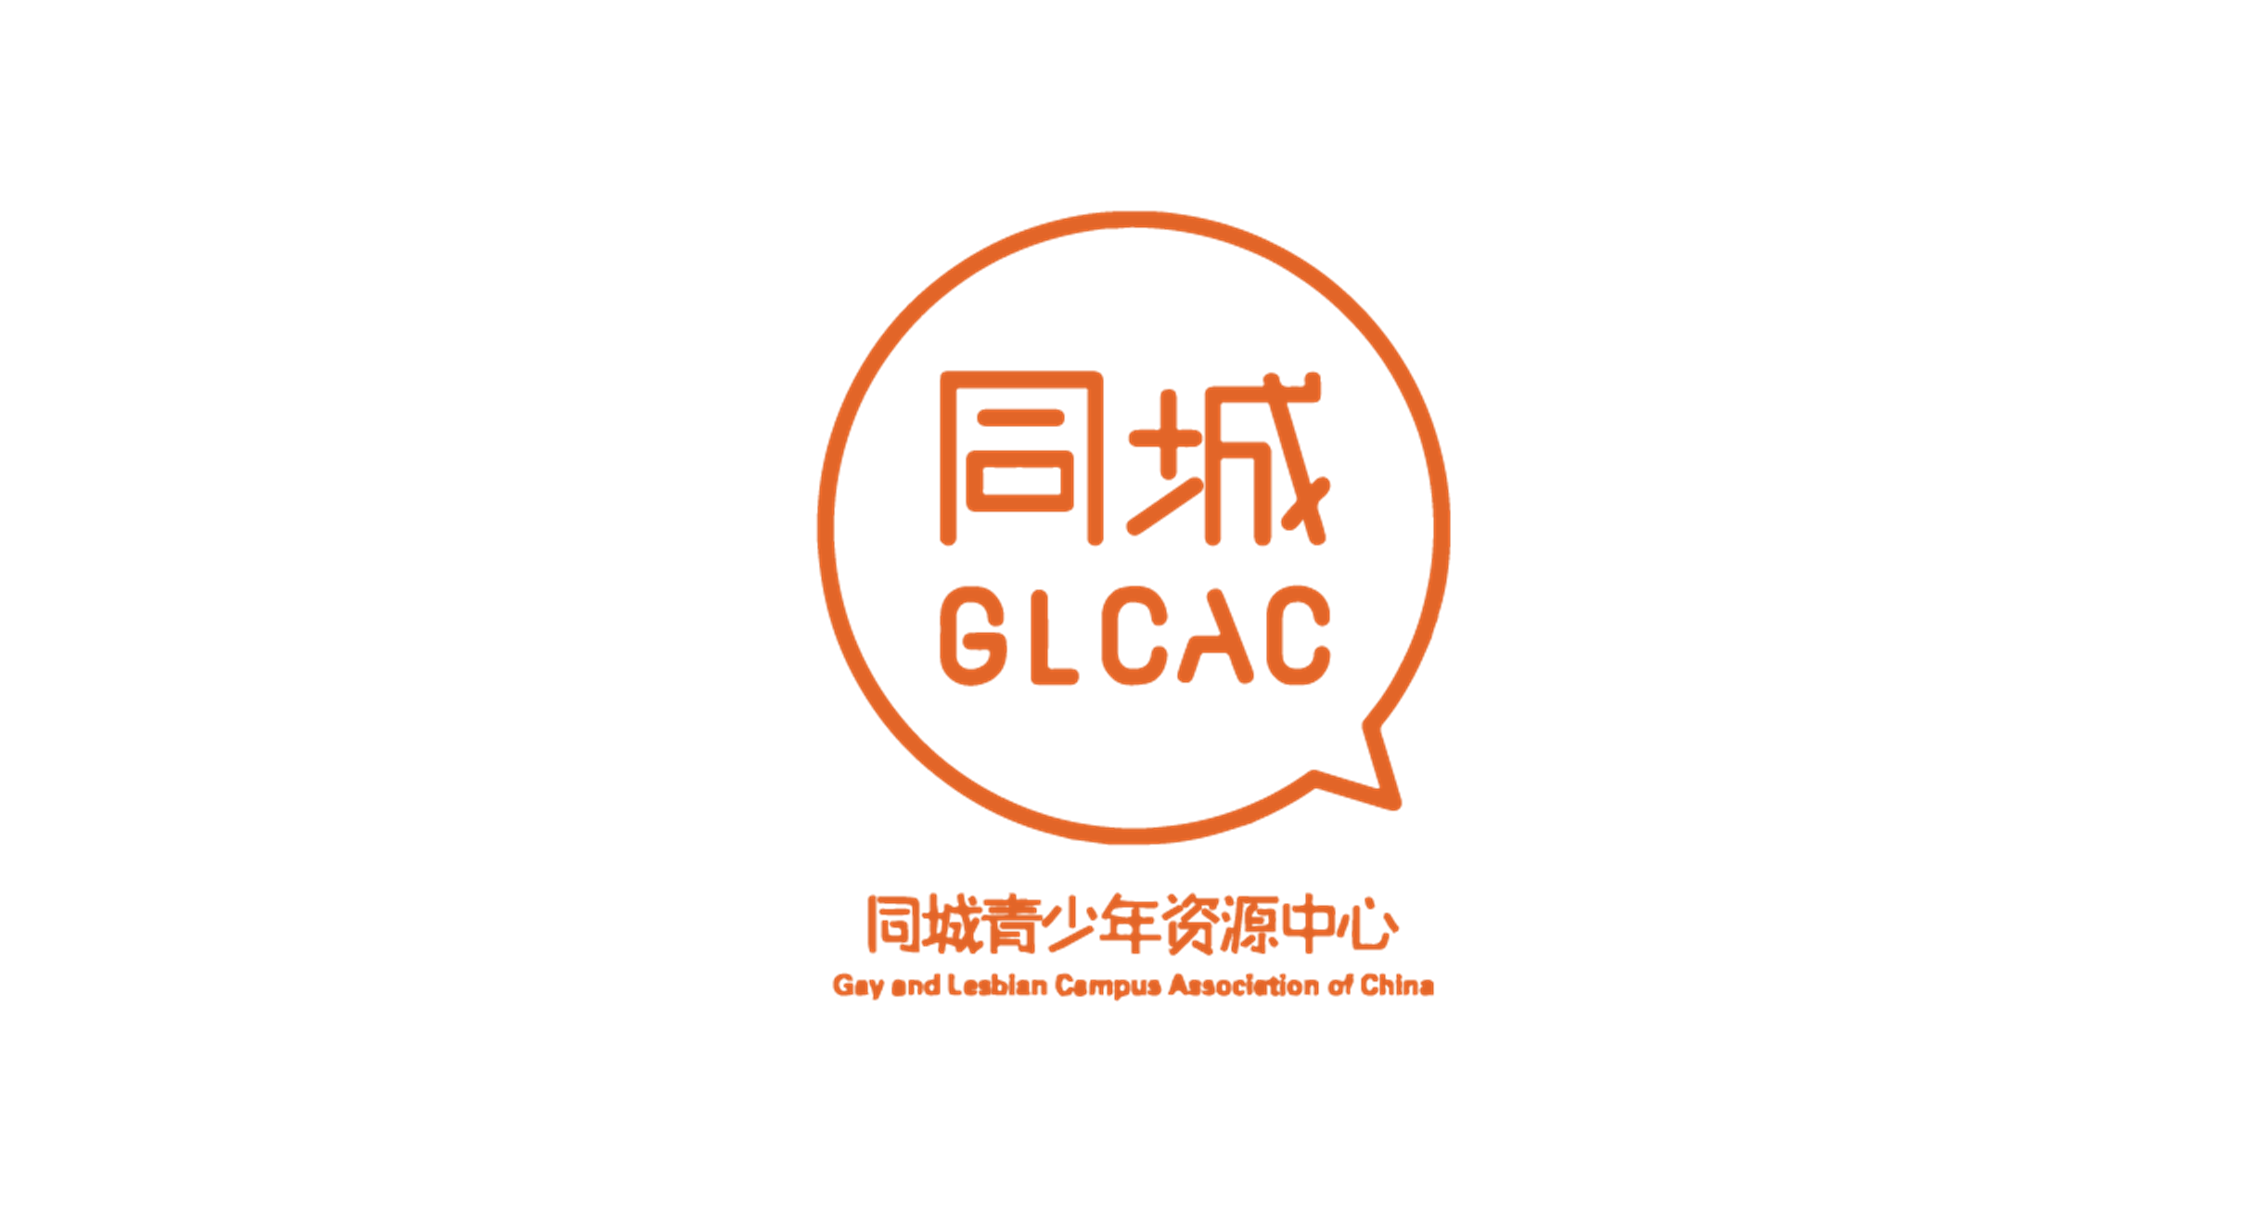 同城青少年资源中心 GLCAC